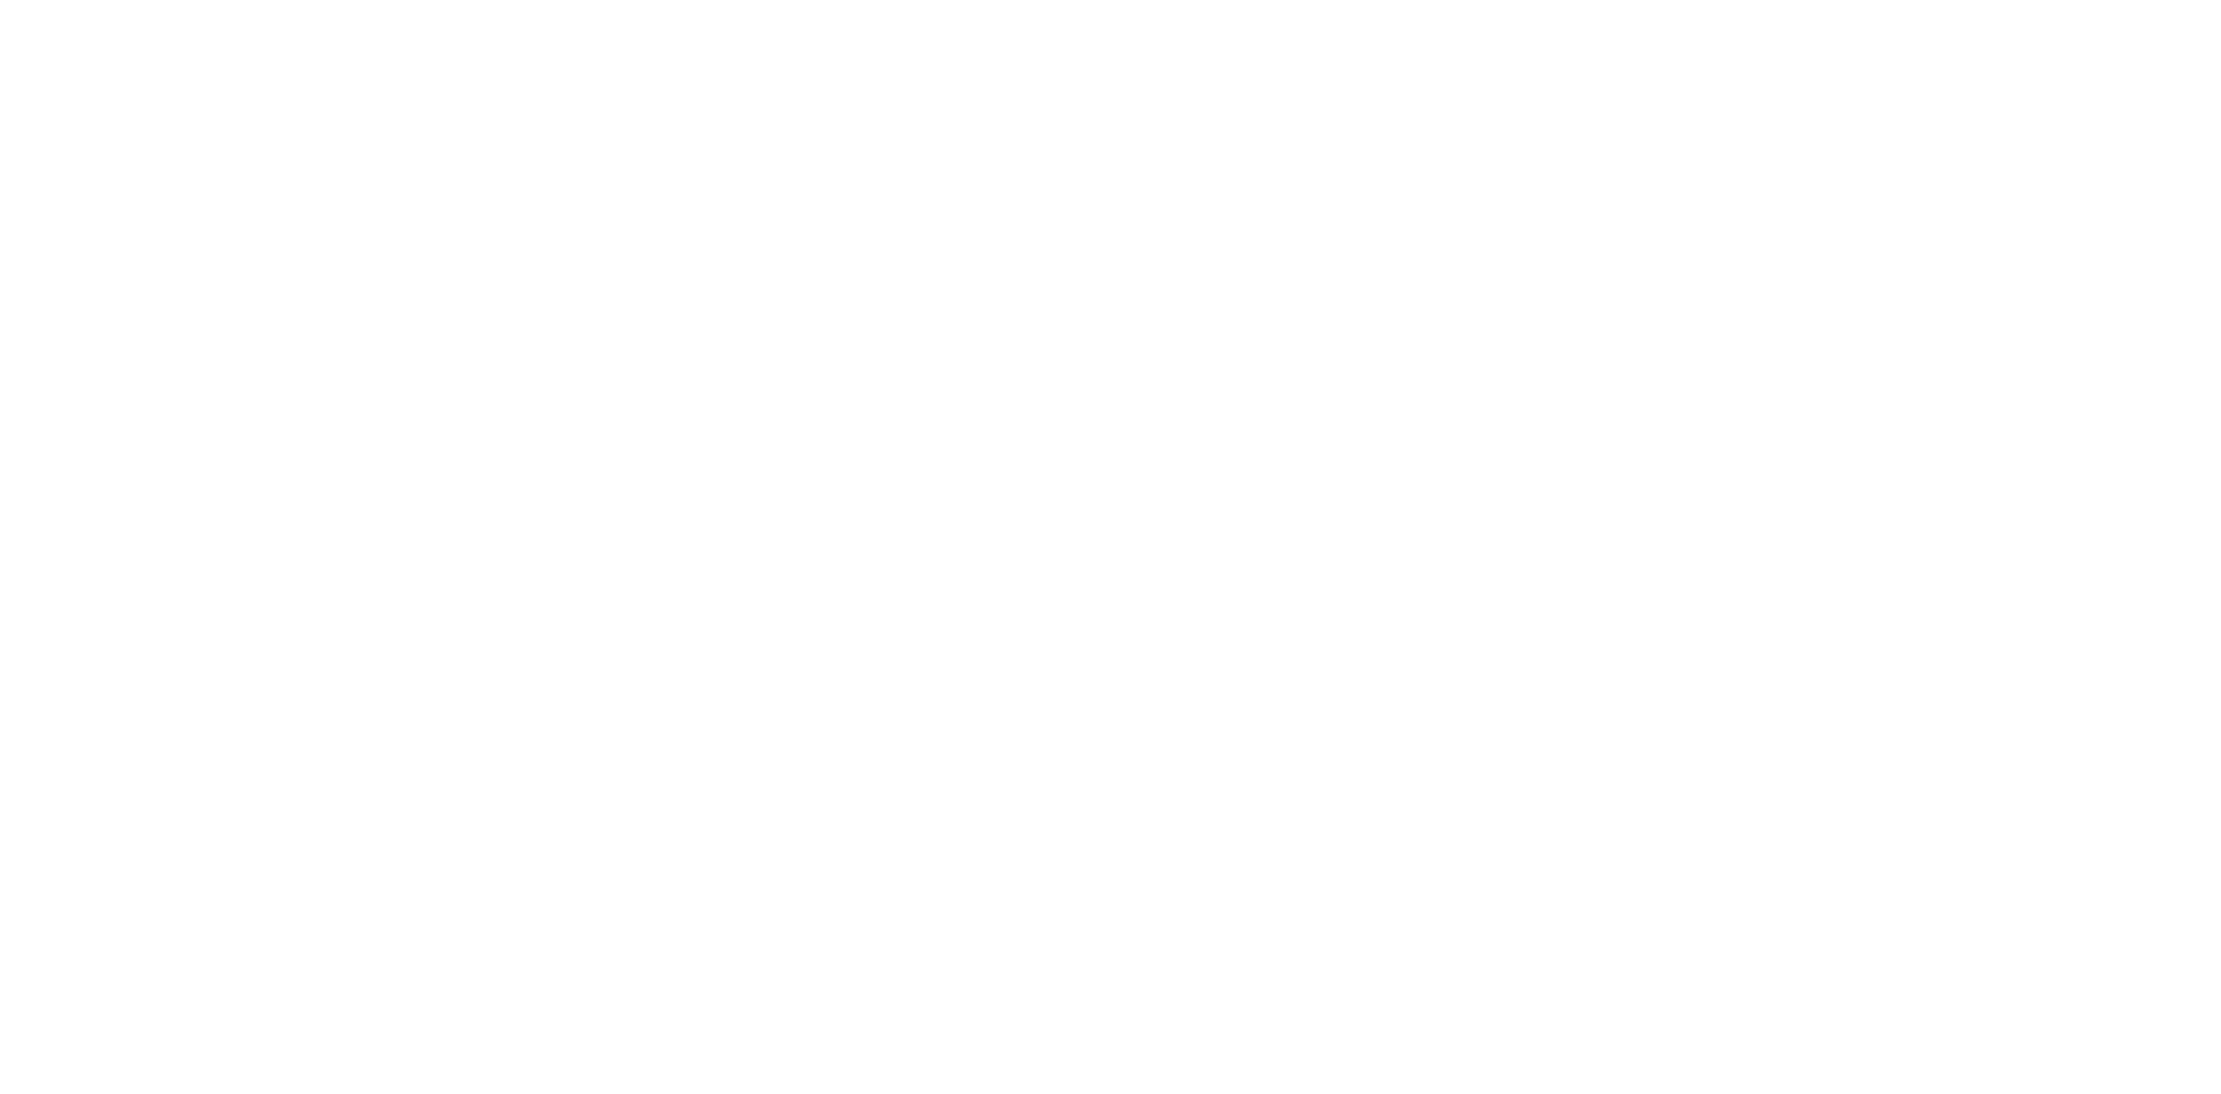 The Barista Institute